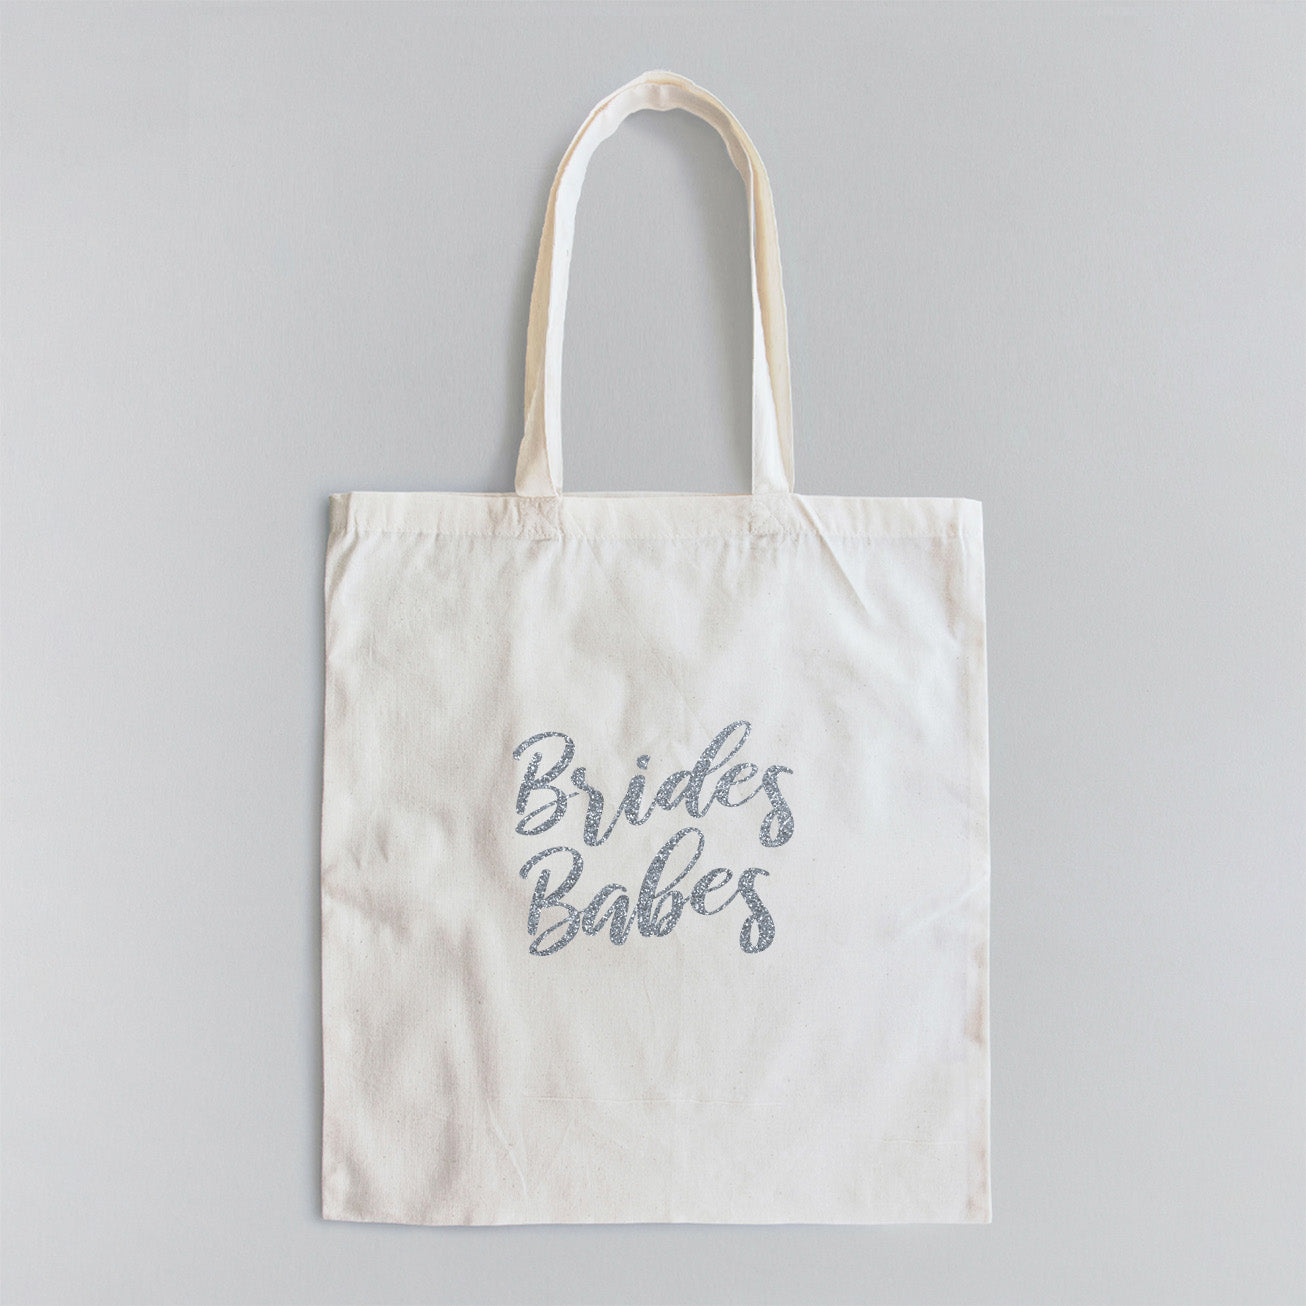 Bride's Babe - Tote Bag